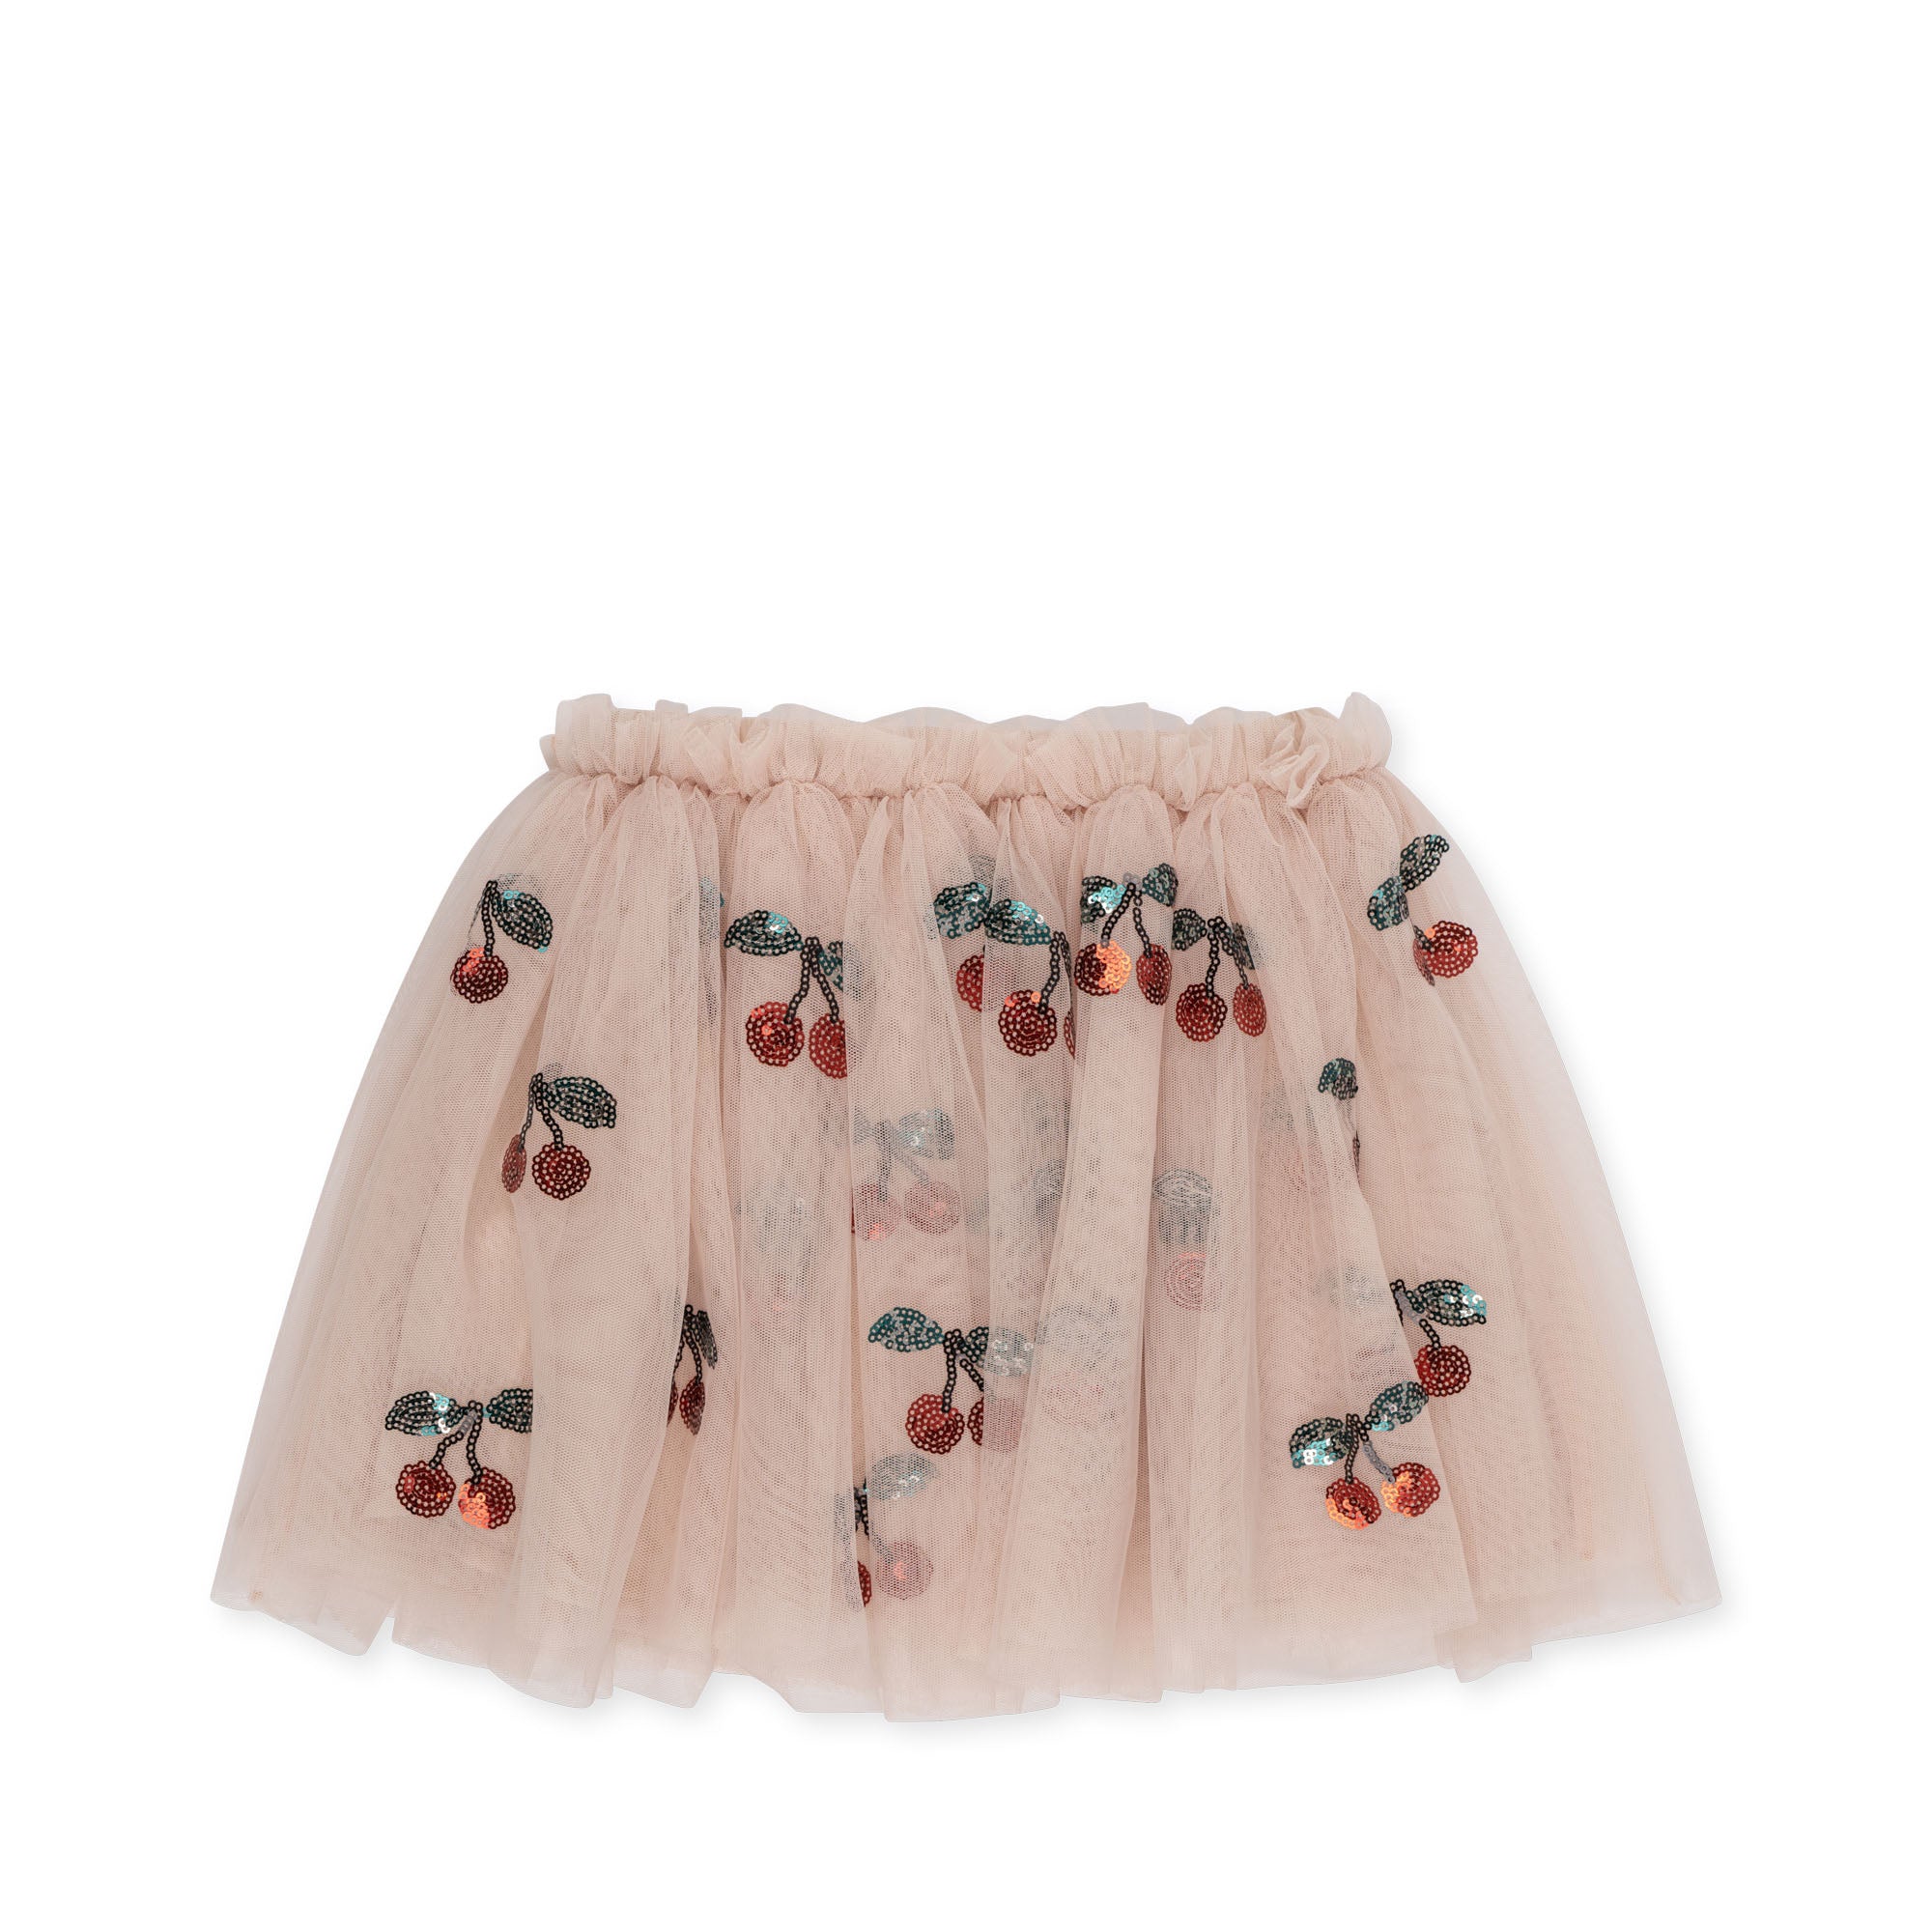 Minnie Organic Cotton Underwear GOTS Cherry Printed